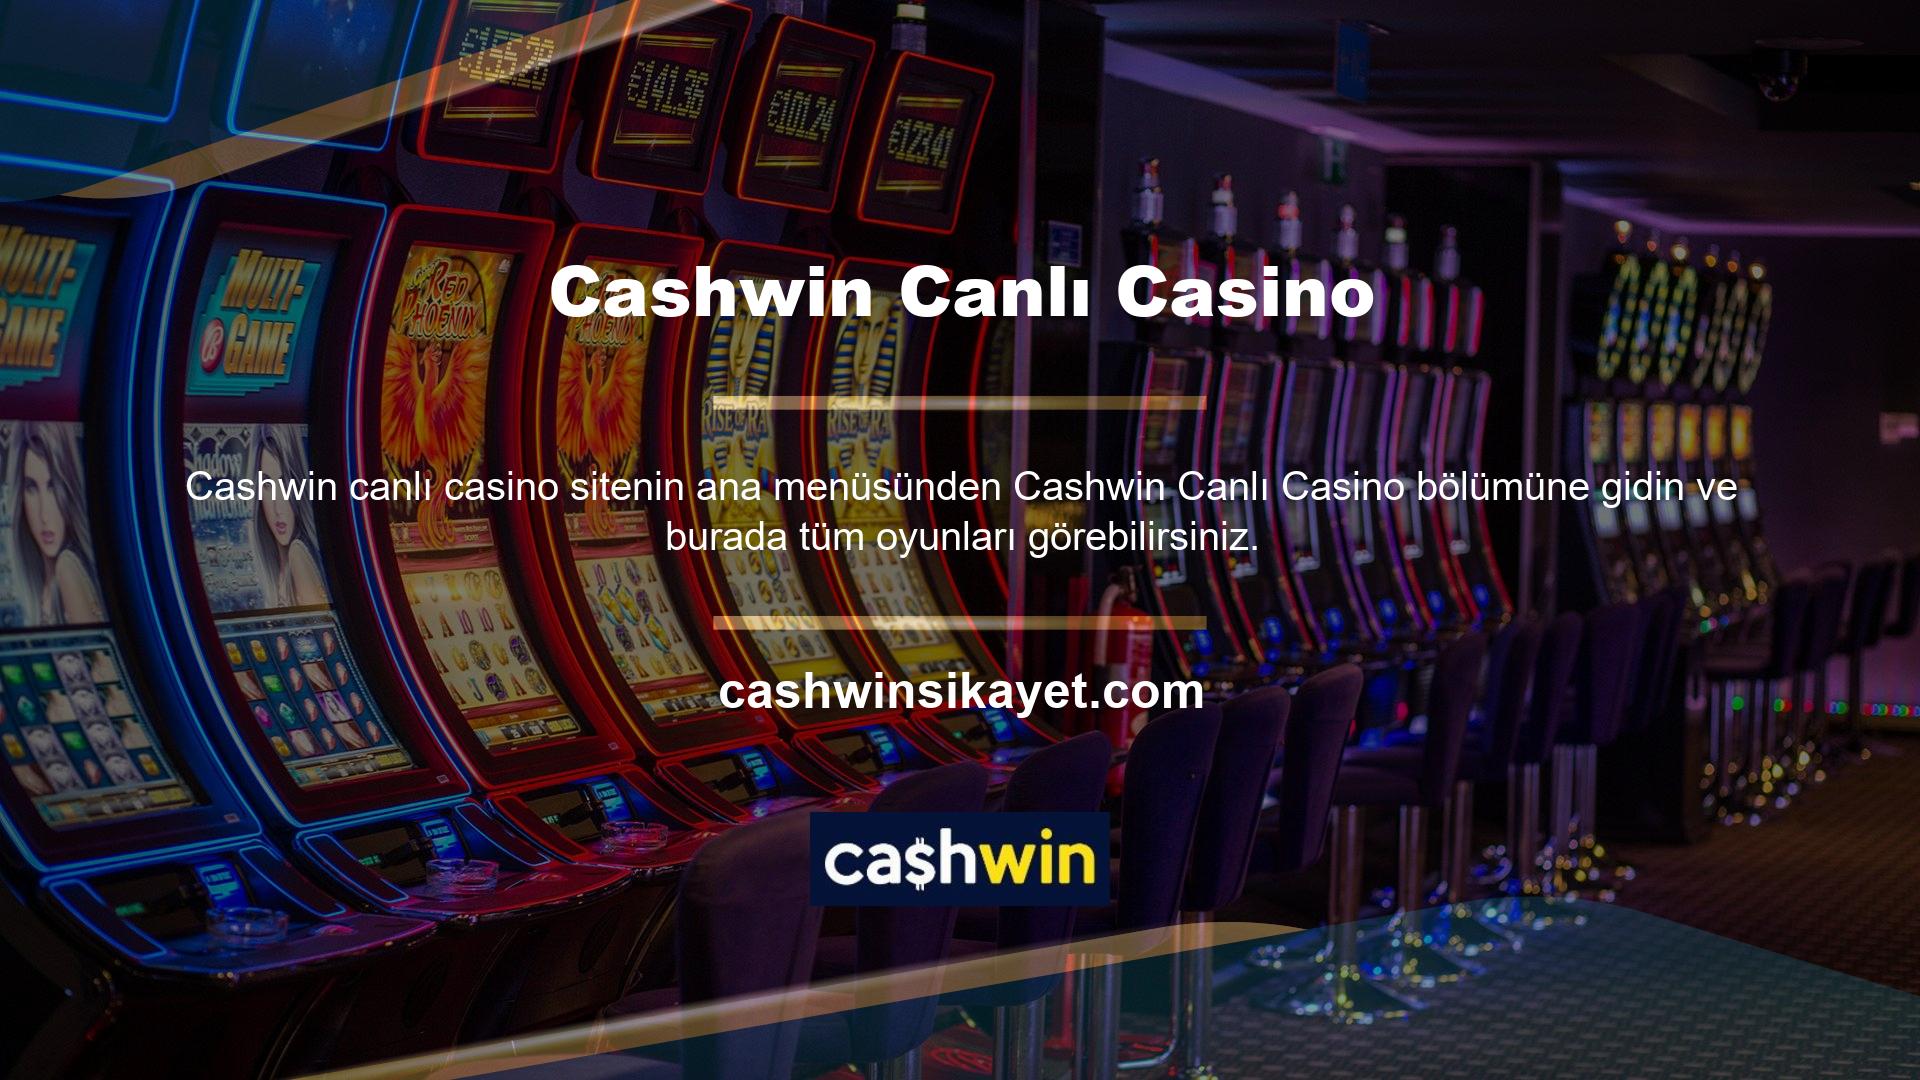 Bir oyuncu Canlı Casino'ya girdiğinde:

	En İyi Oyunlar
	Poker
	Bakara

Sitenin diğer tüm bölümleri gibi Cashwin mobil uygulamasını kullanarak cep telefonunuzdan canlı casinoya erişmenizi kolaylaştırıyor